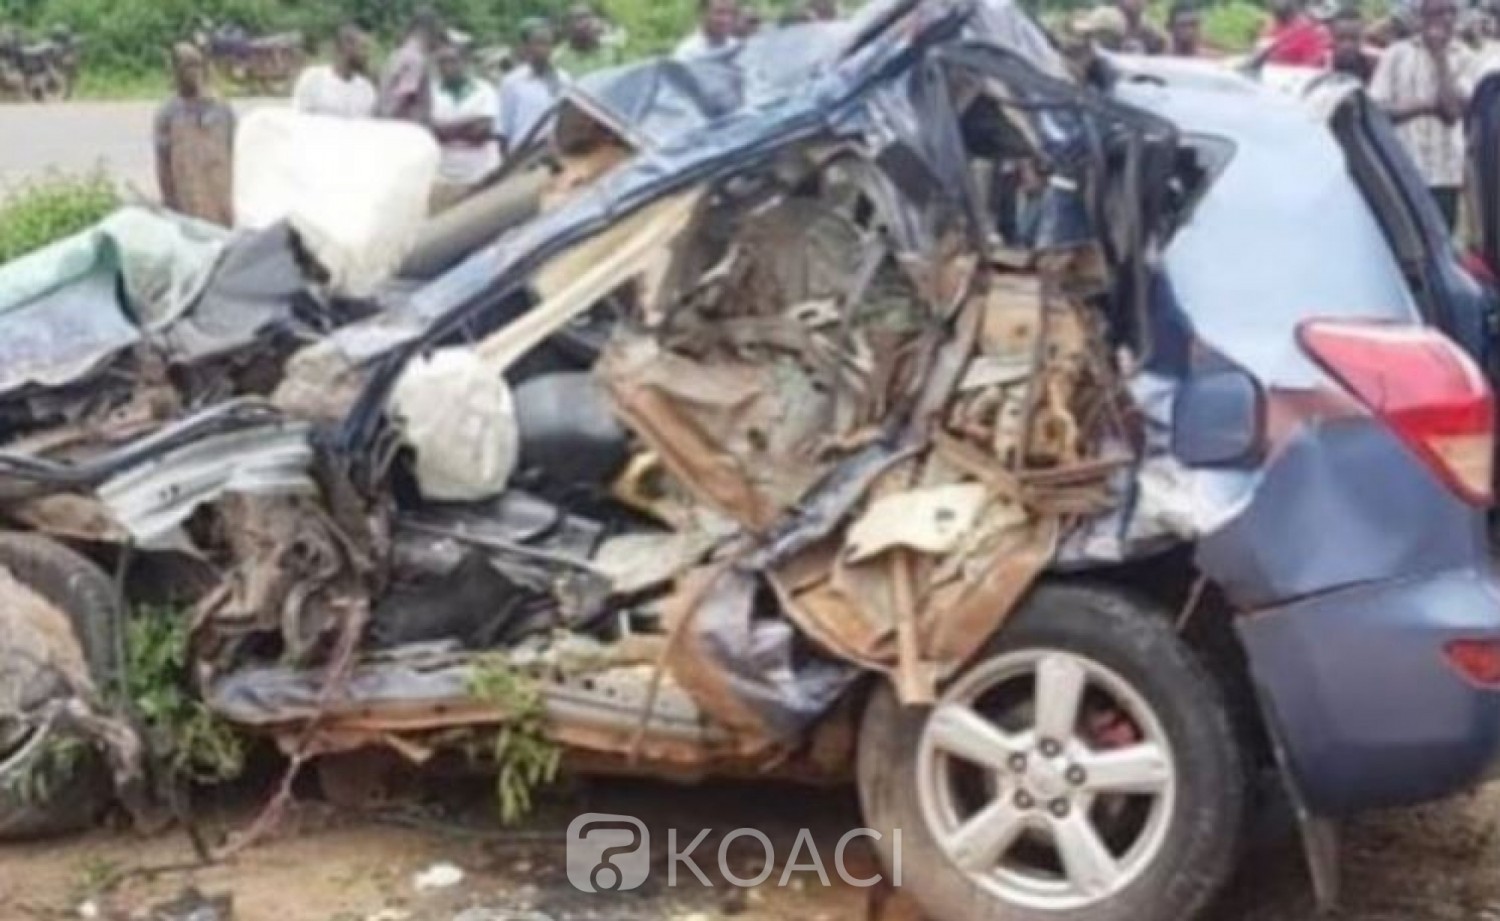 Côte d'Ivoire: 5 personnes décédées dans un accident, il s'agit des membres de la famille Doumbia, ils partaient accueillir leurs parents revenant de la Mecque